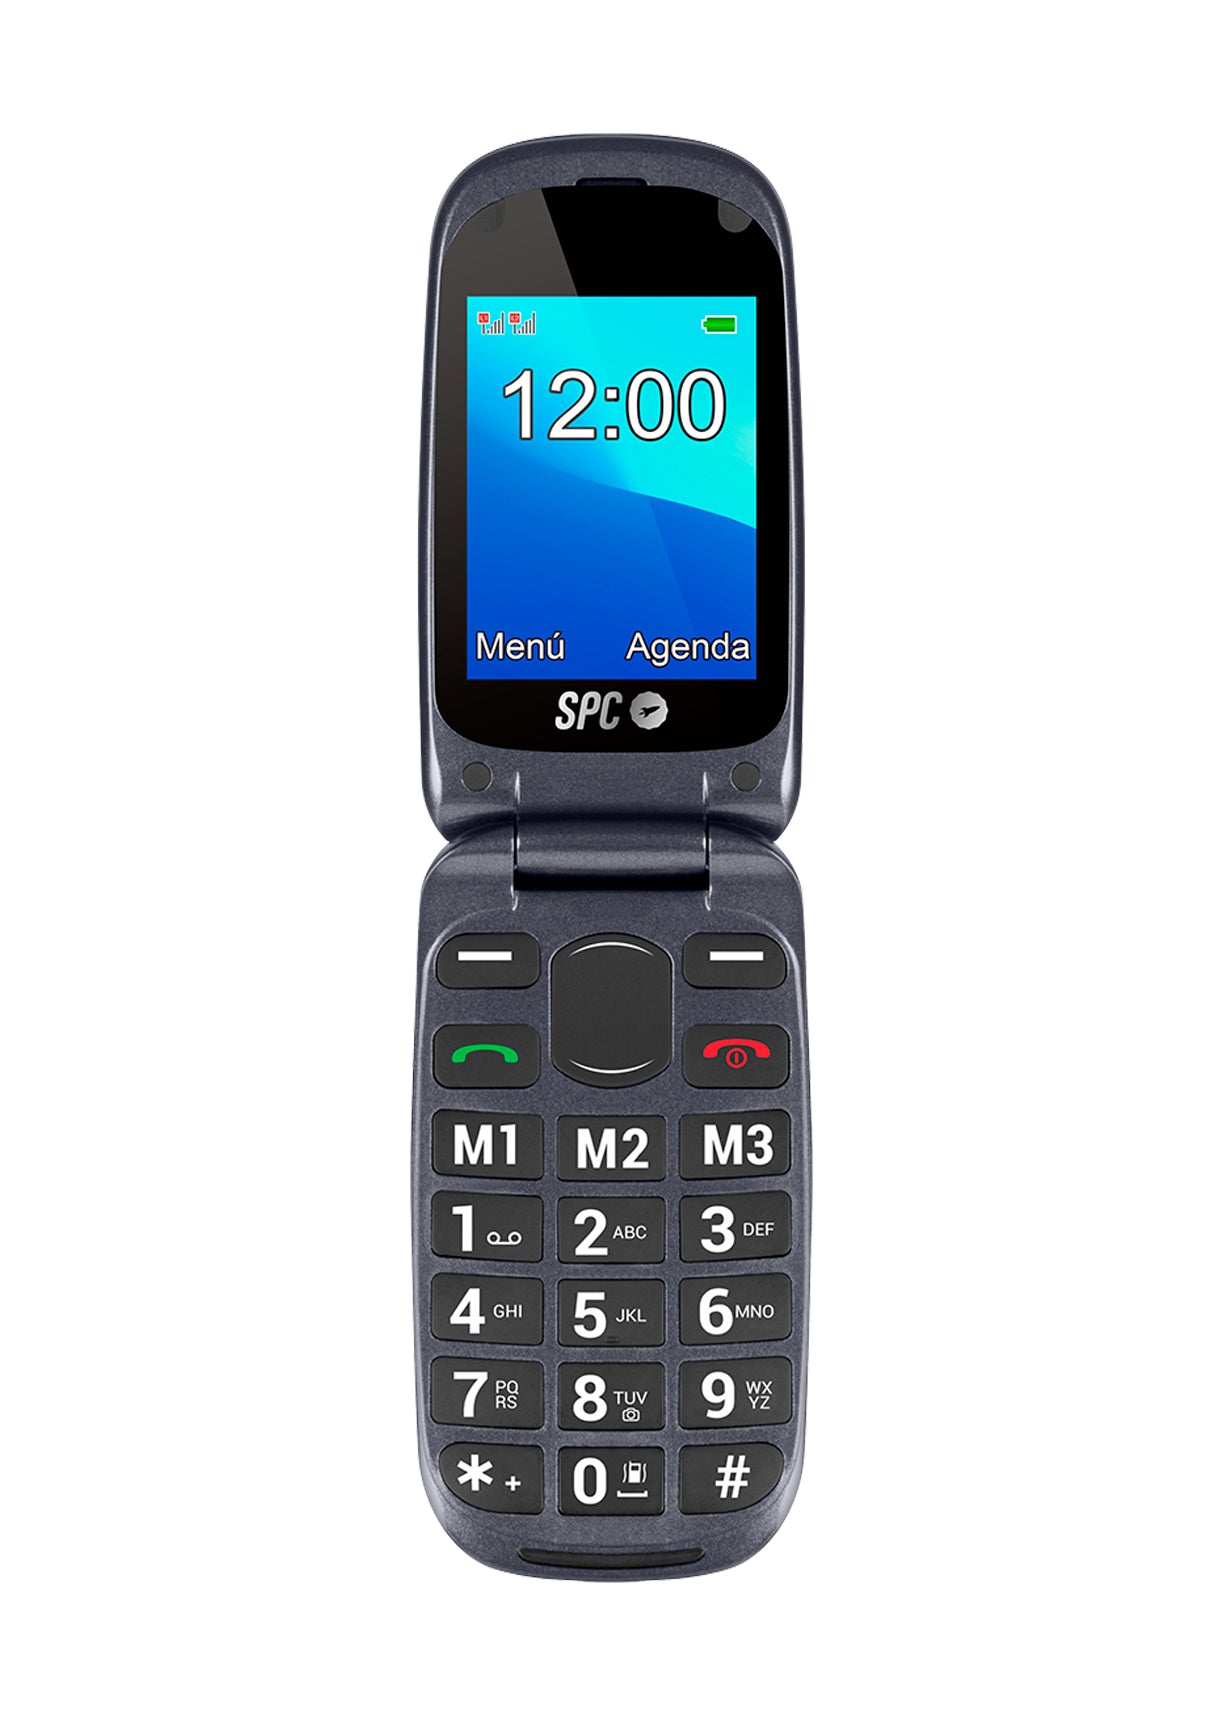 68,97 € - Telefono Movil SPC 2312N con tapa